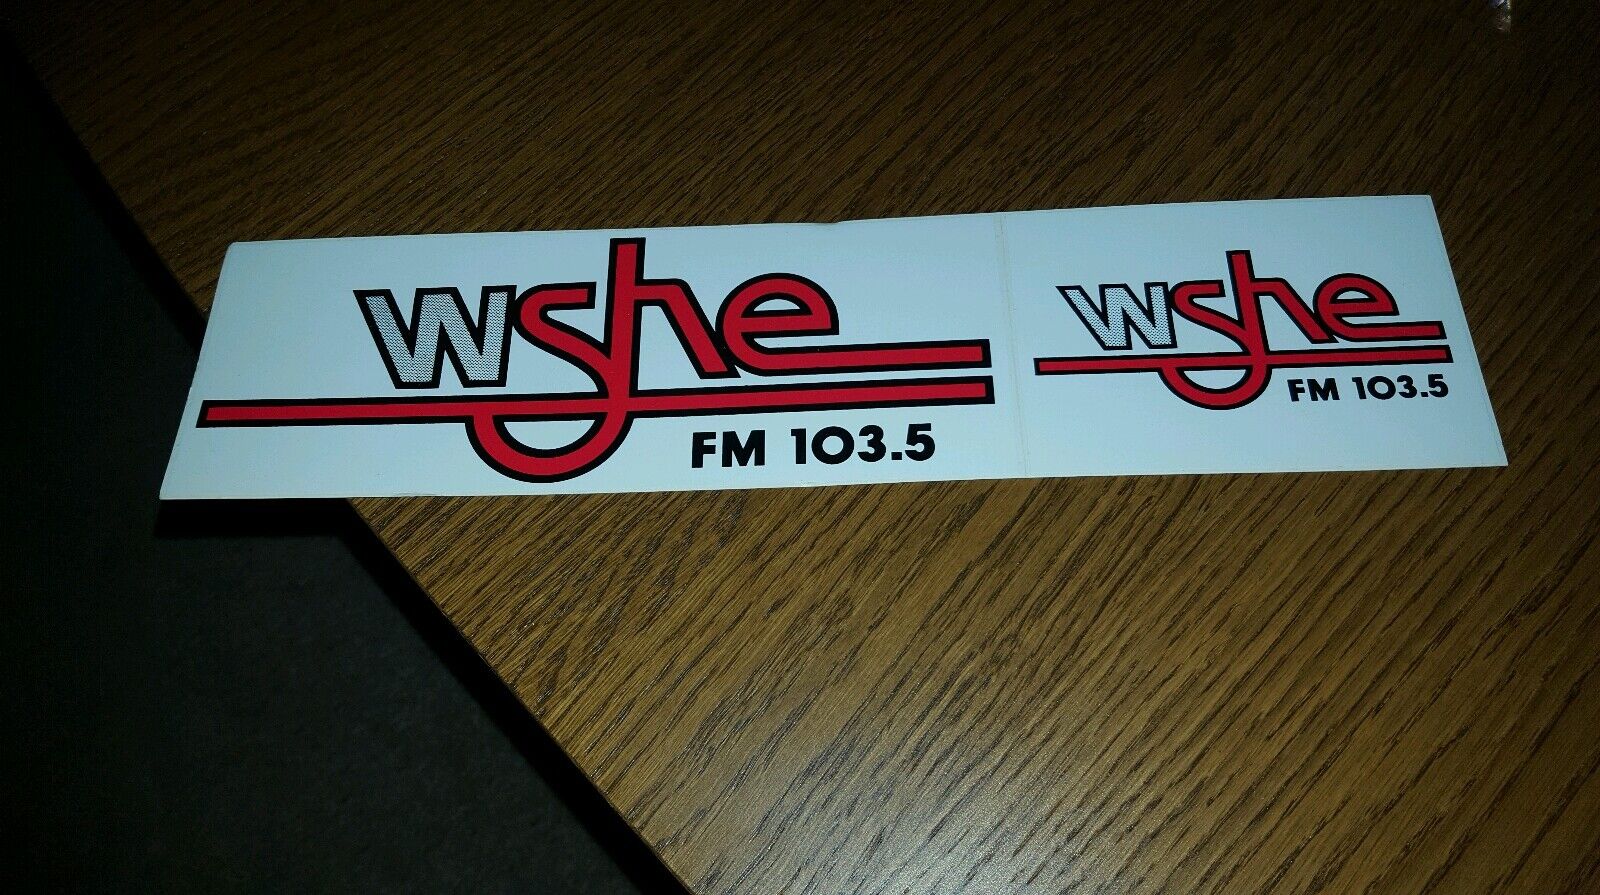 103.5 WSHE-FM Fort Lauderdale Miami Rare Original New Bumper Stickers